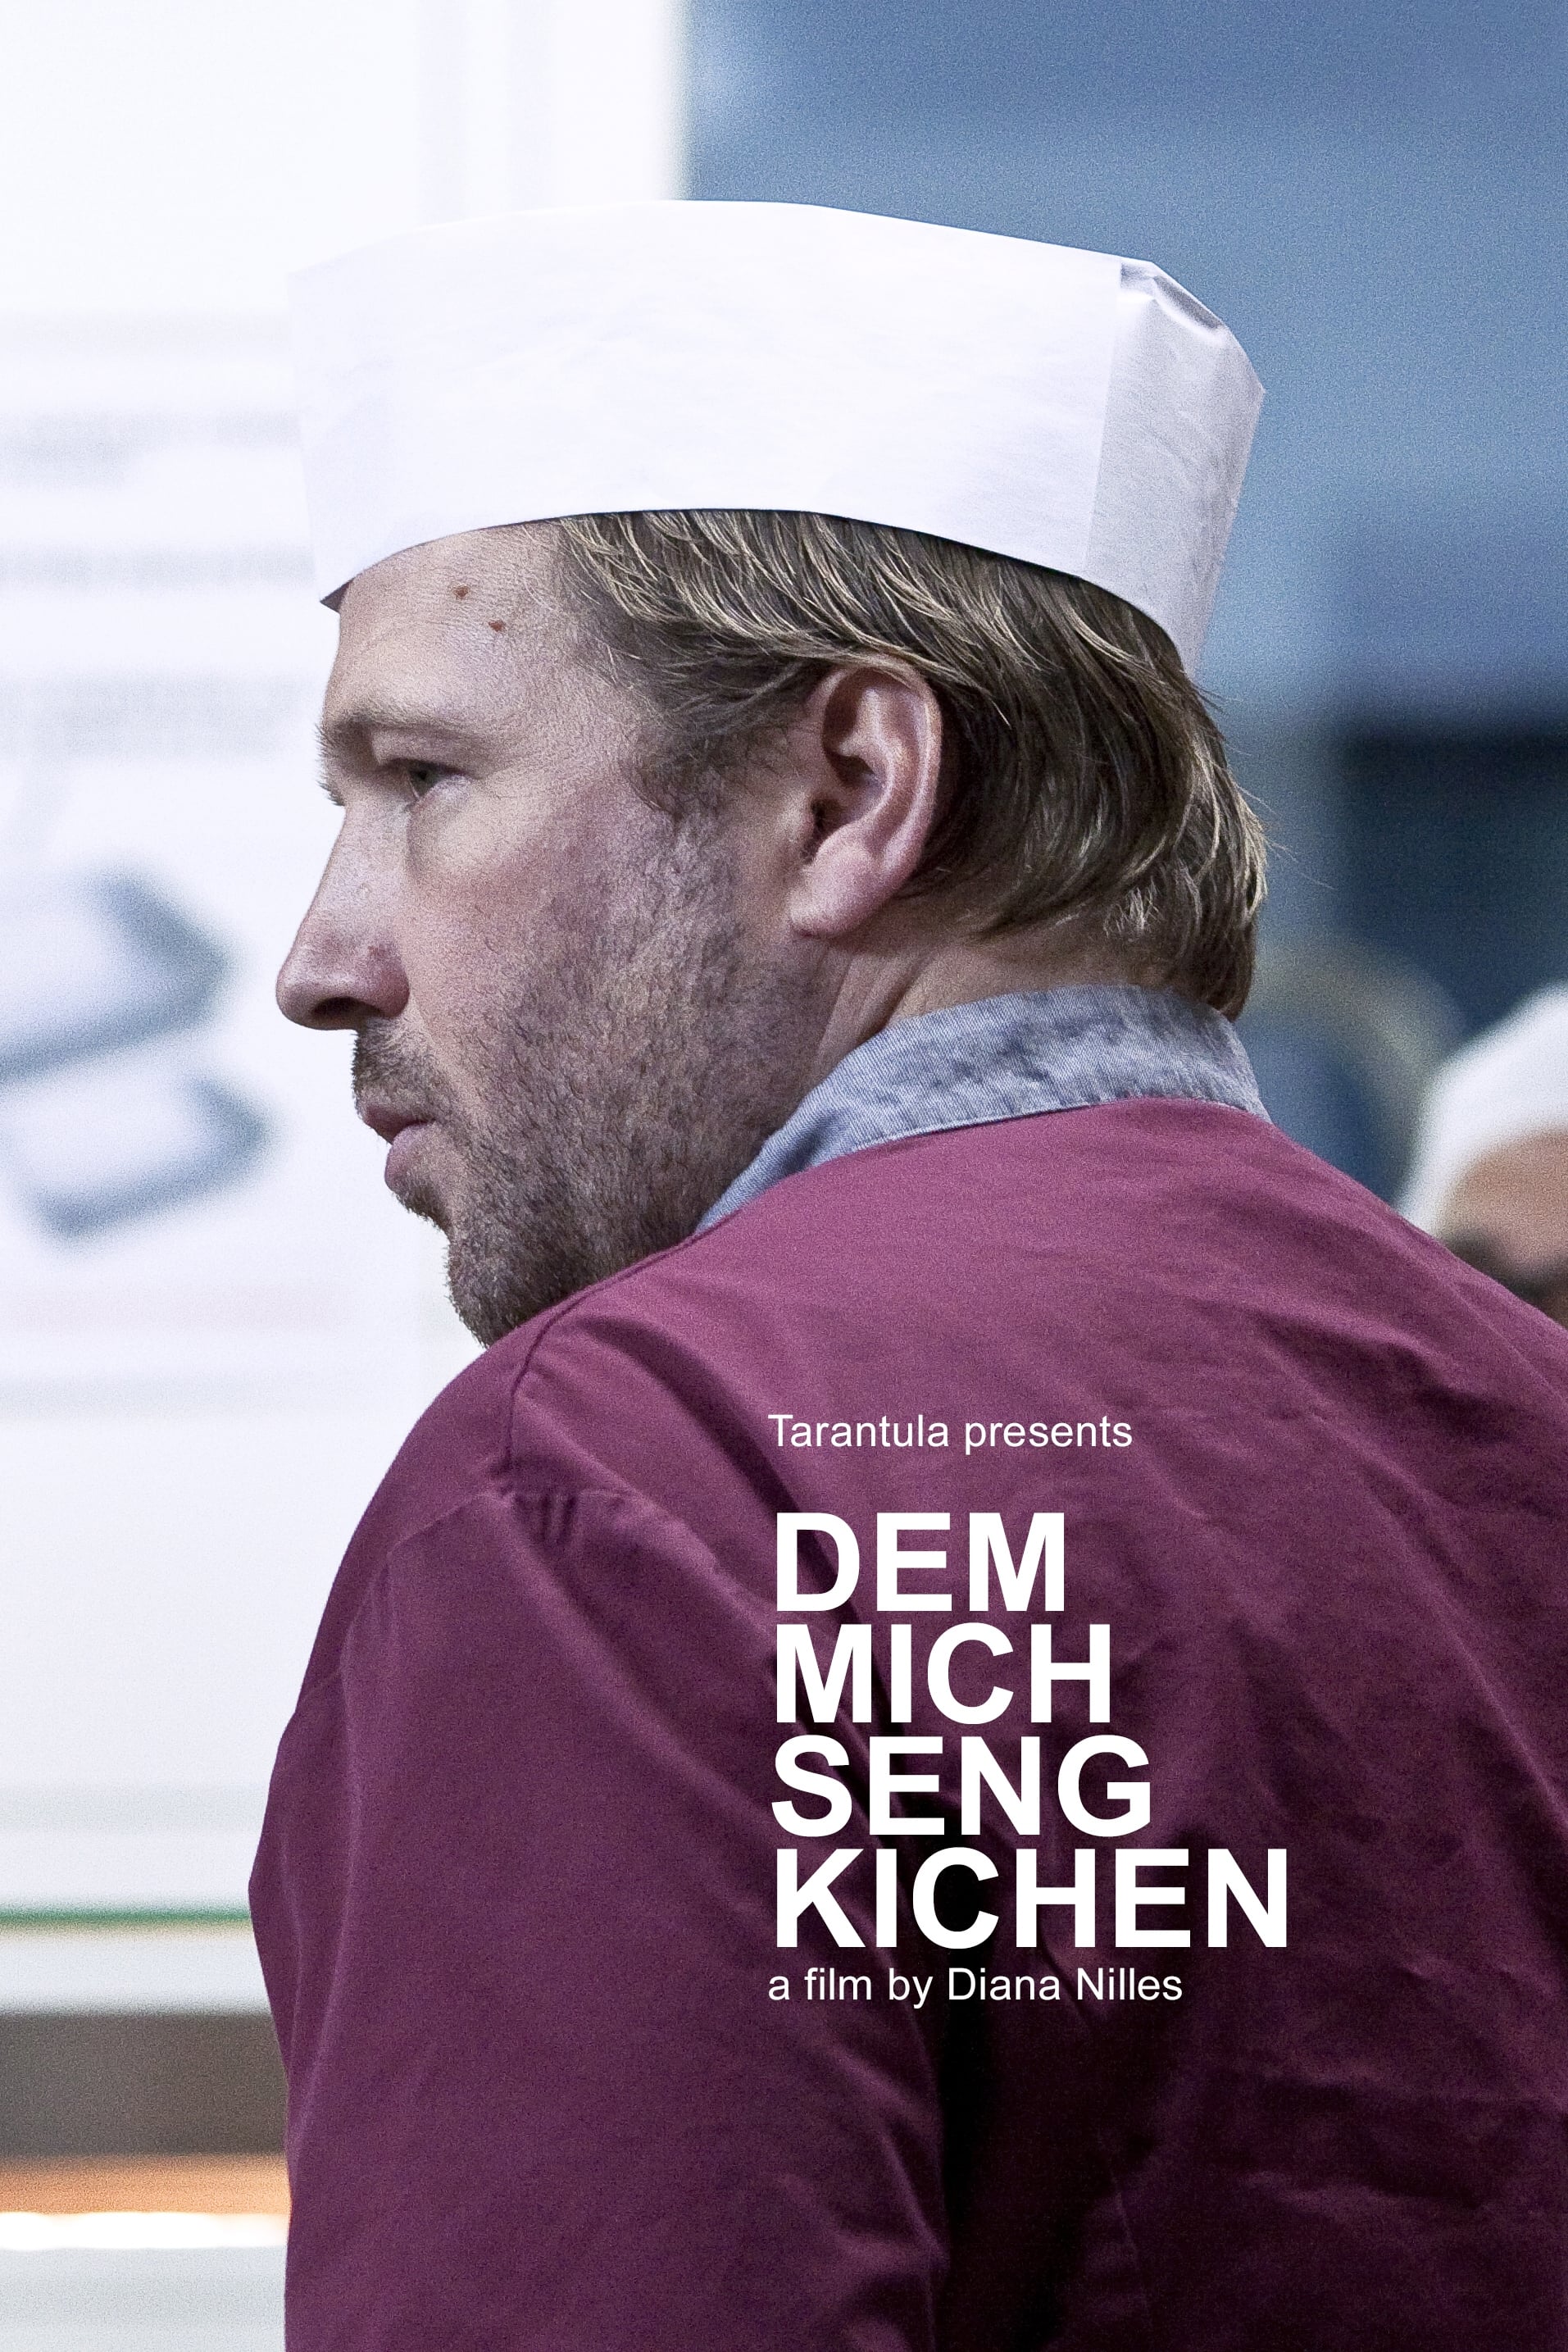 Mich's Kitchen